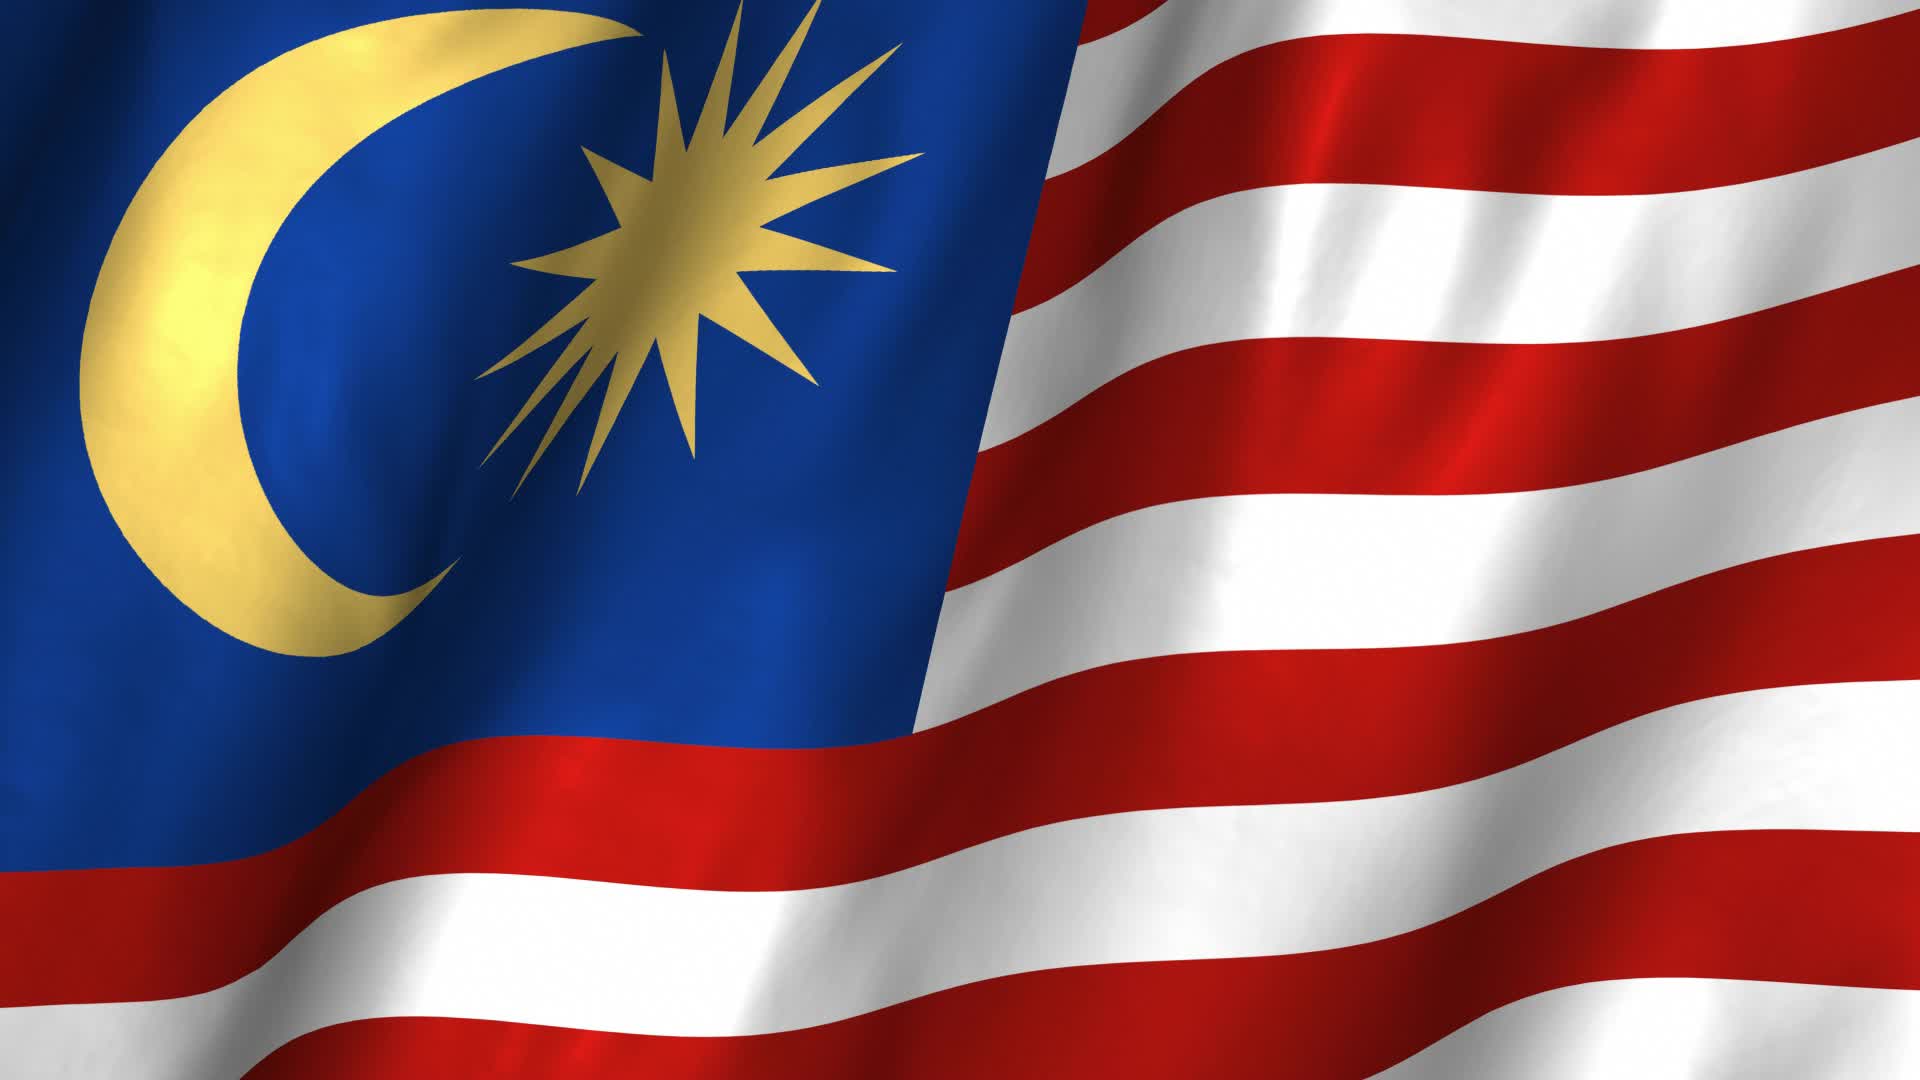 Video bendera malaysia berkibar